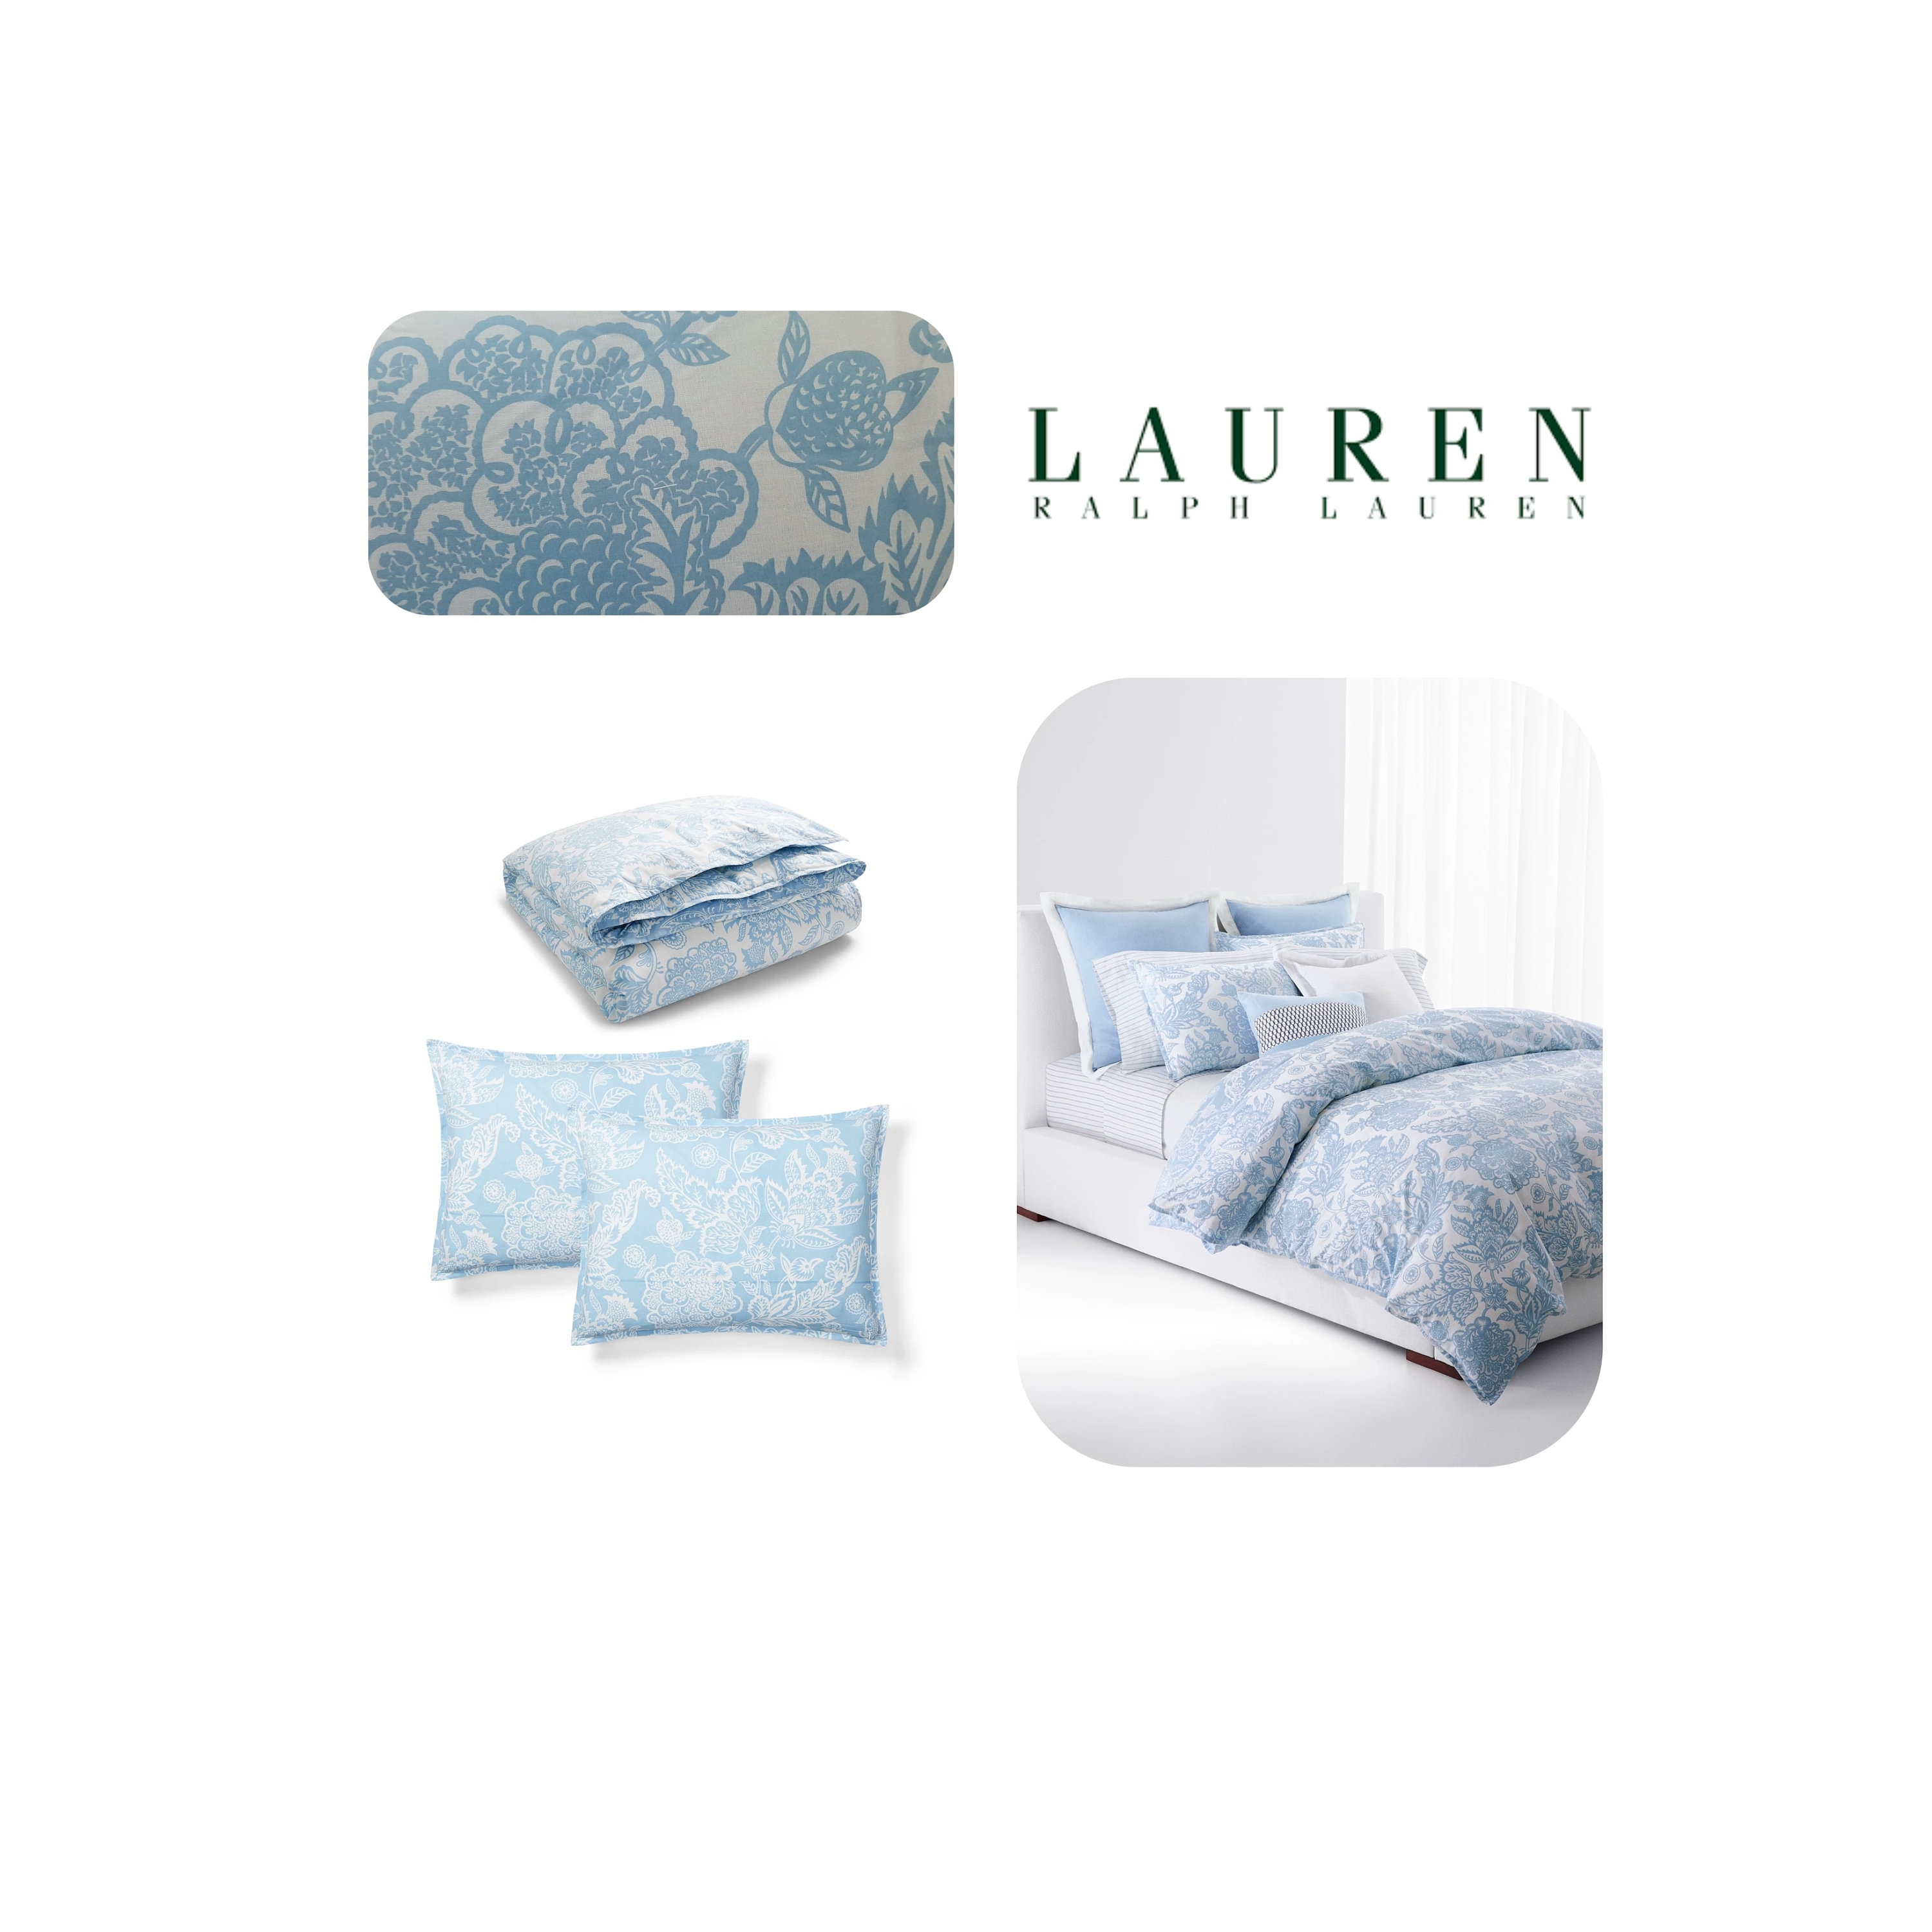 Lauren Ralph Lauren, Bedding